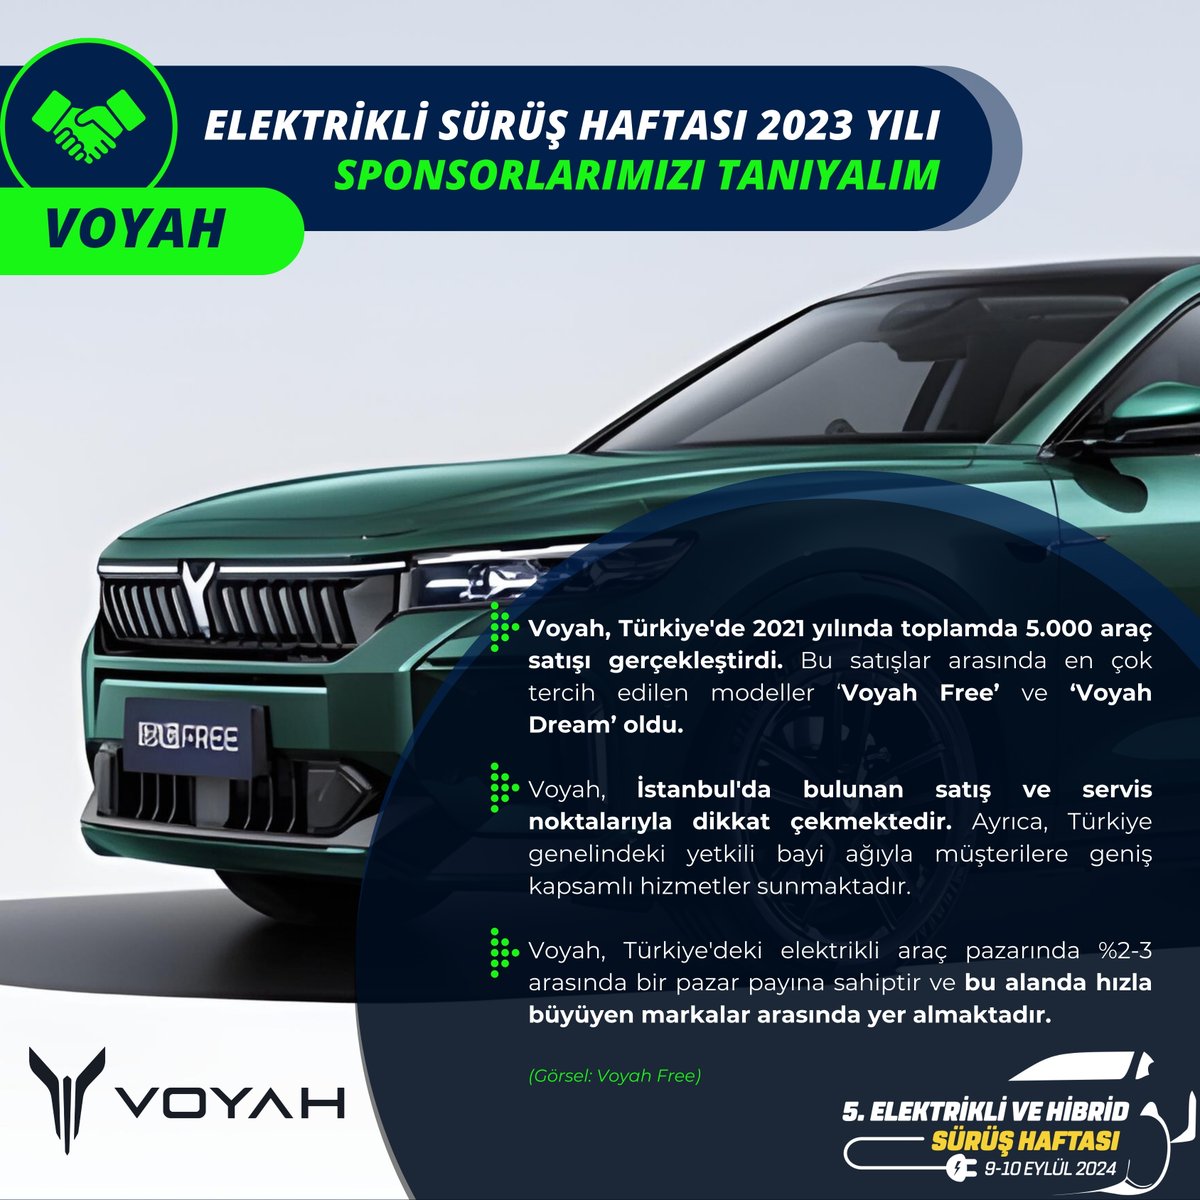 ⚡ Türkiye'deki elektrikli araç pazarında %2-3 arasında bir pazar payına sahip ve bu alanda hızla büyüyen markalar arasında yer alıyor. @ehcars #elektriklisürüşhaftası #elektrikliaraba #electriccars #hybrid #voyah #voyahfree @VOYAH_Global